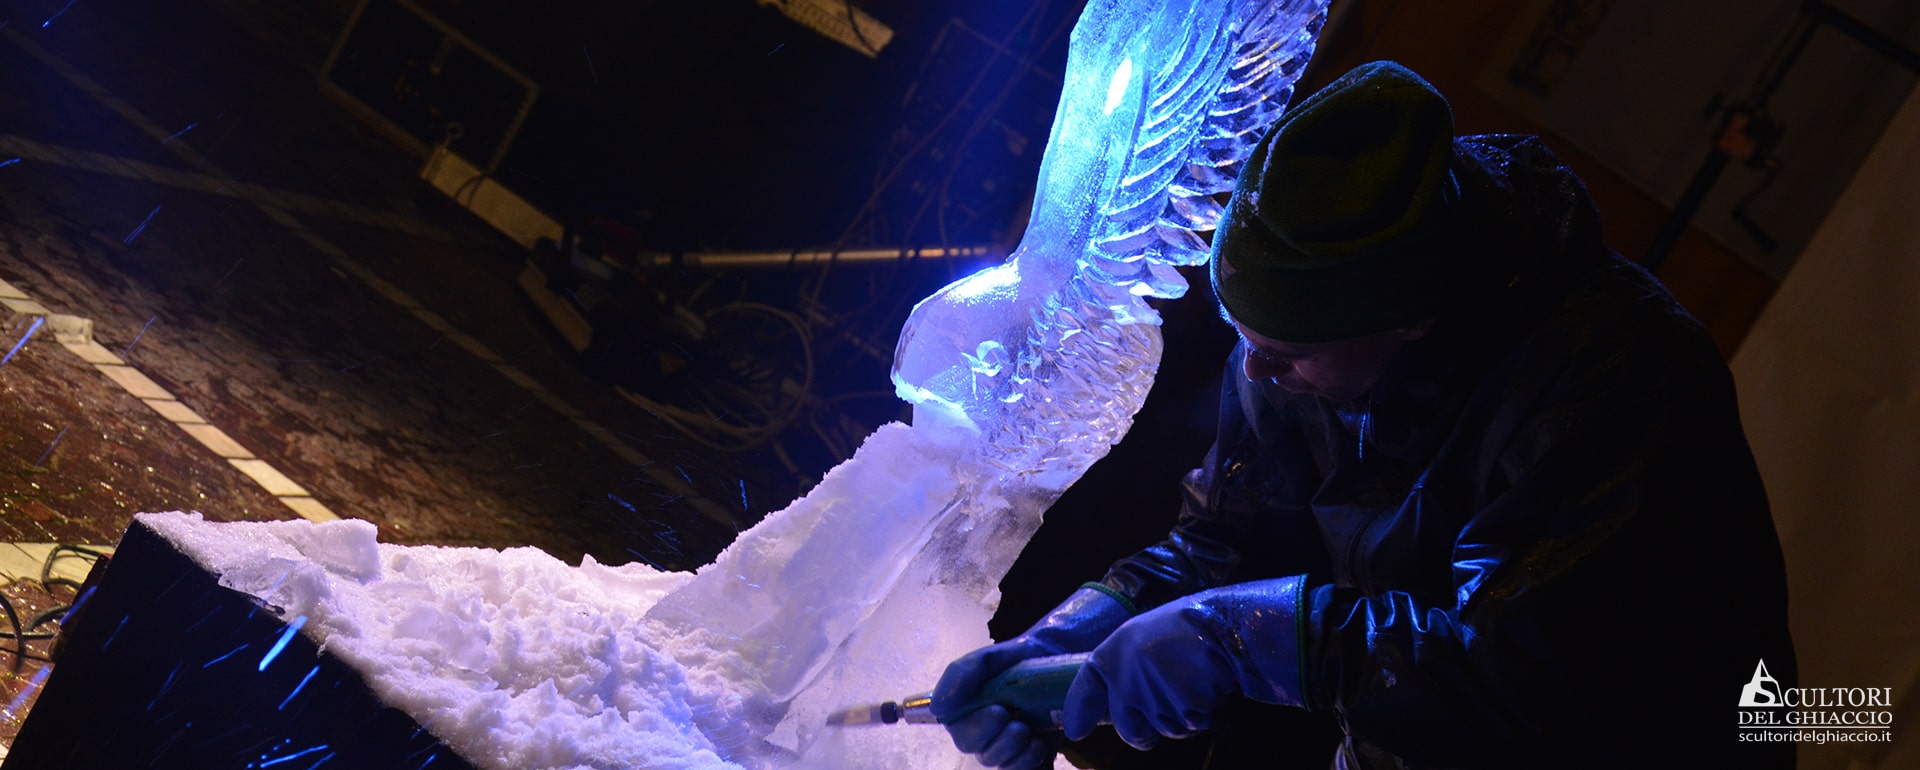 scultore del ghiaccio che lavora